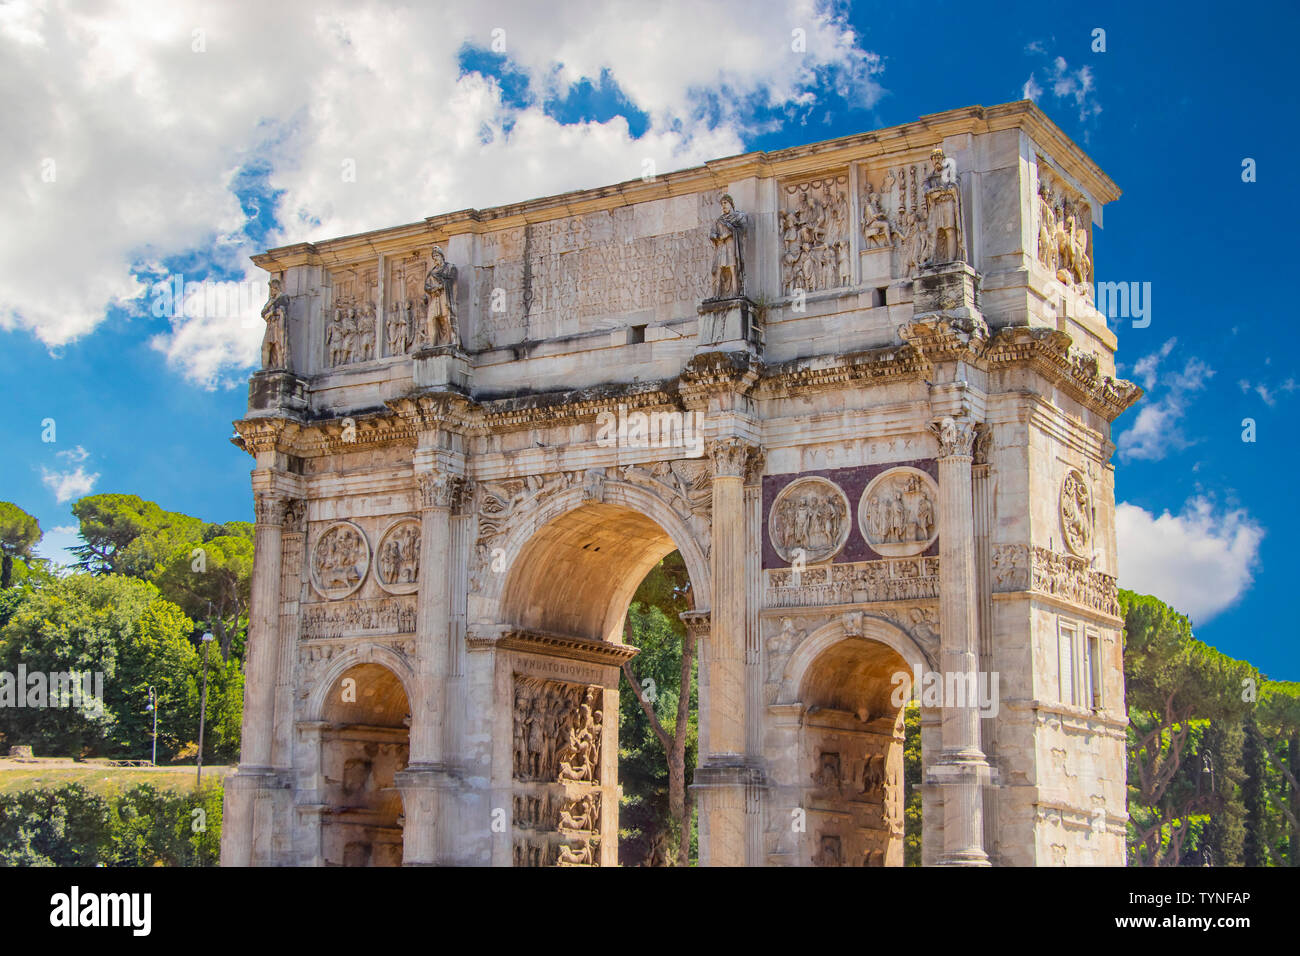 Vue sur l'Arc de Constantin et le Colisée dans le soleil du matin. C'est un arc de triomphe à Rome, situé entre le Colisée et le Palatin Banque D'Images